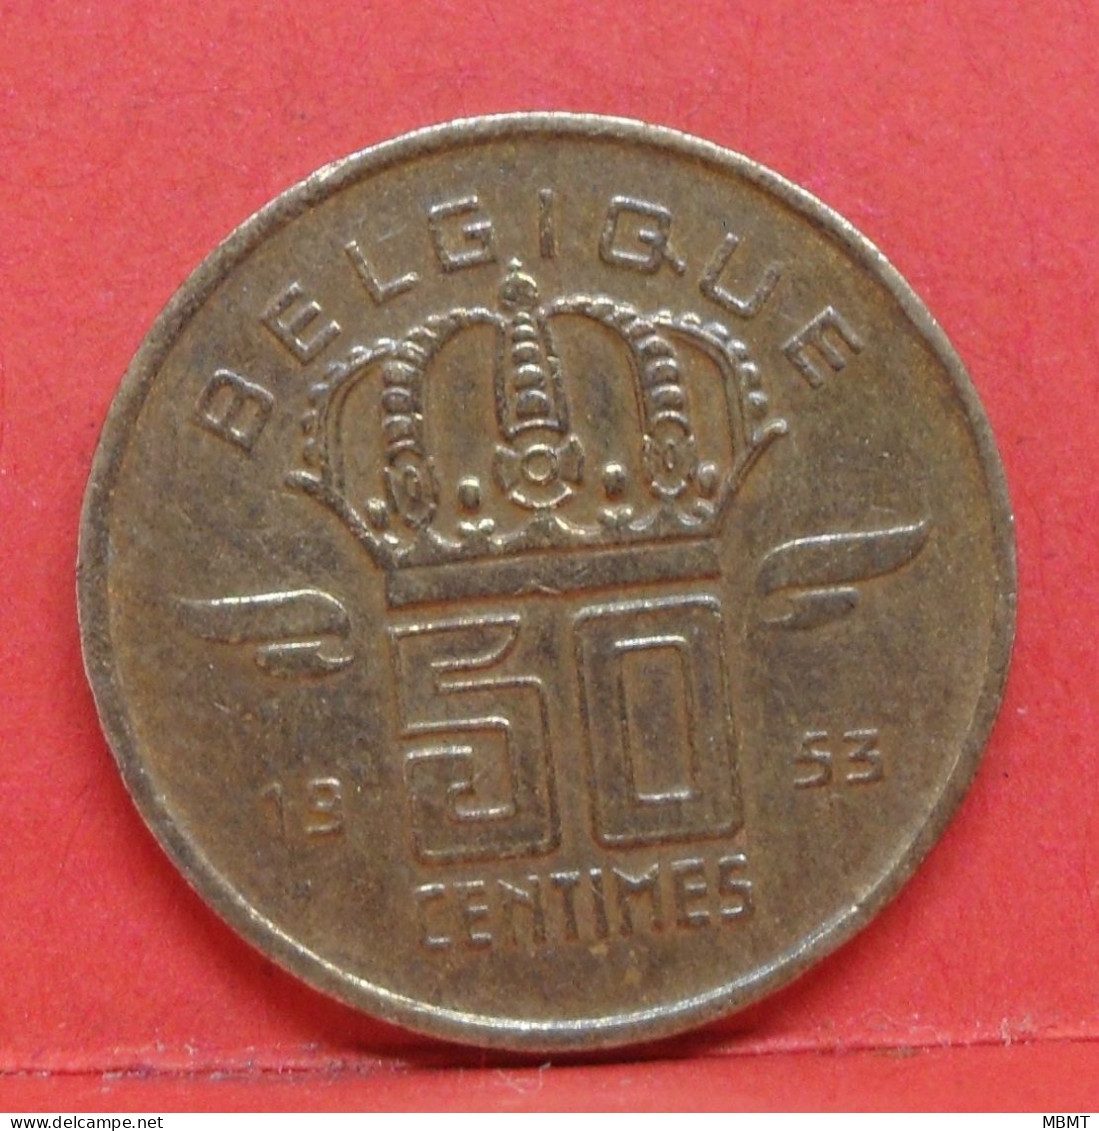 50 Centimes 1953 - SUP - Pièce Monnaie Belgique - Article N°1703 - 50 Centimes